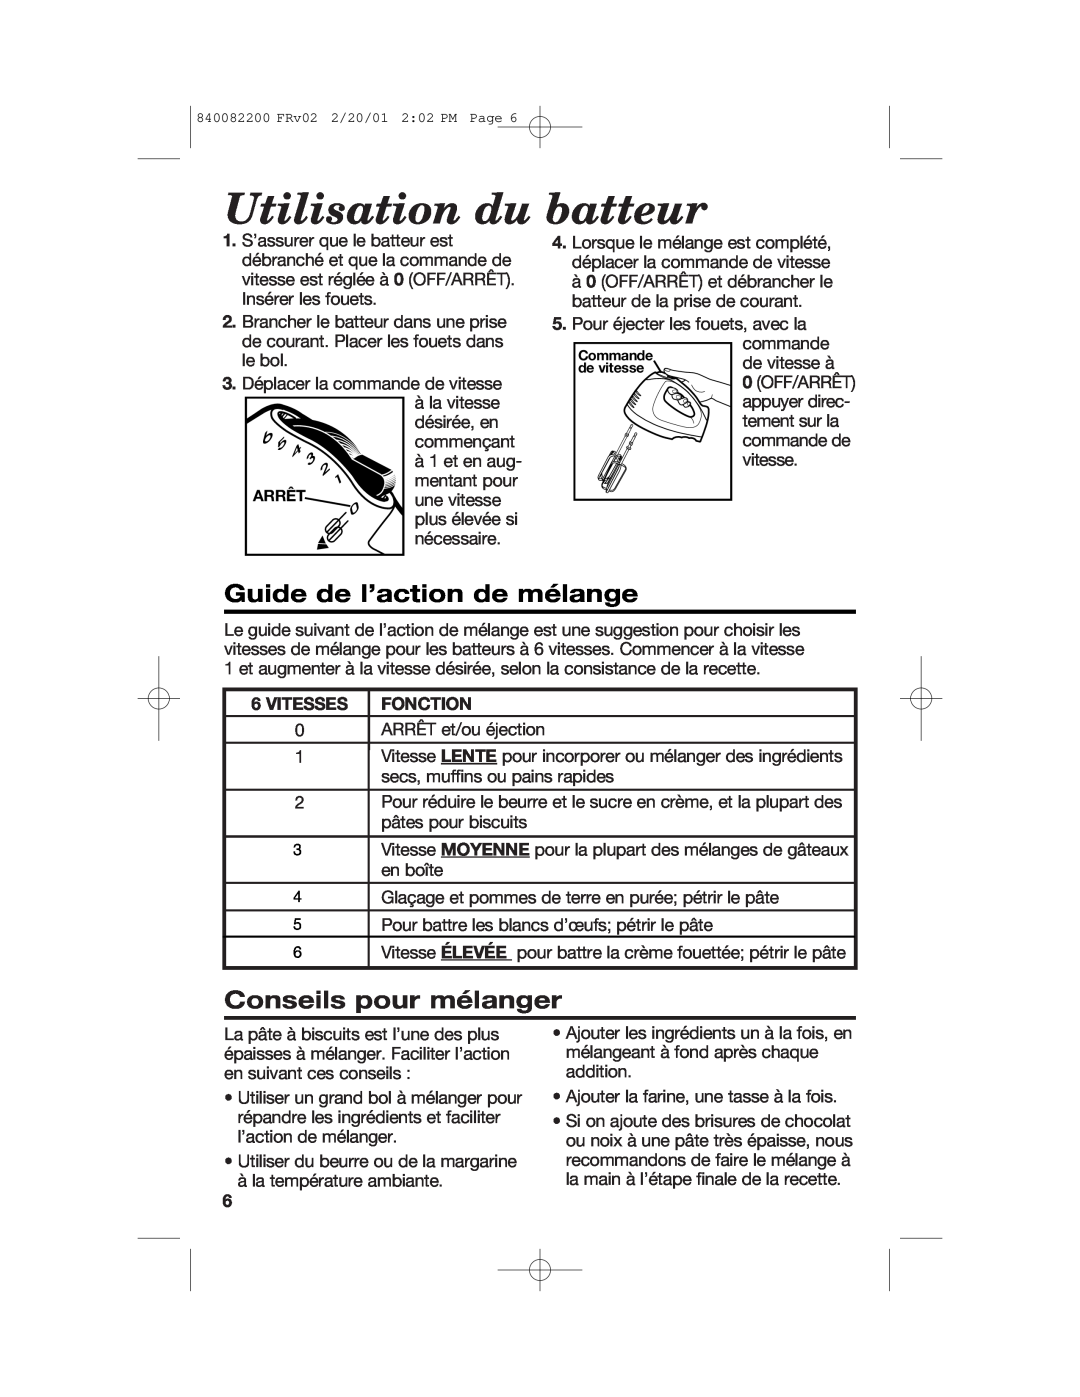 Hamilton Beach 62695RC Utilisation du batteur, Guide de l’action de mélange, Conseils pour mélanger, Vitesses Fonction 